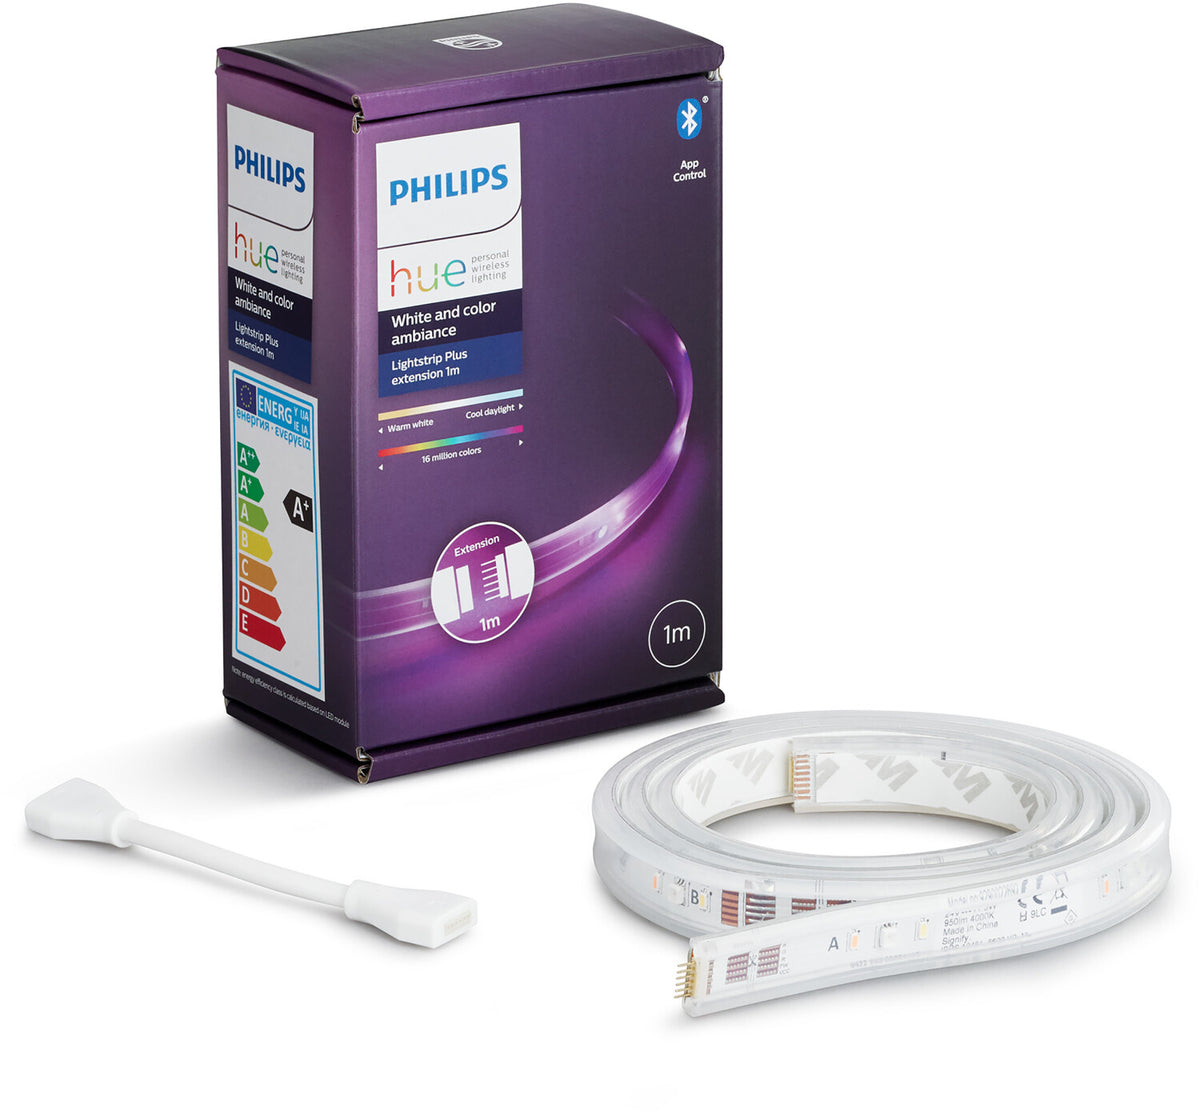 Philips Hue Lightstrip Plus Extension V4 1m – Living